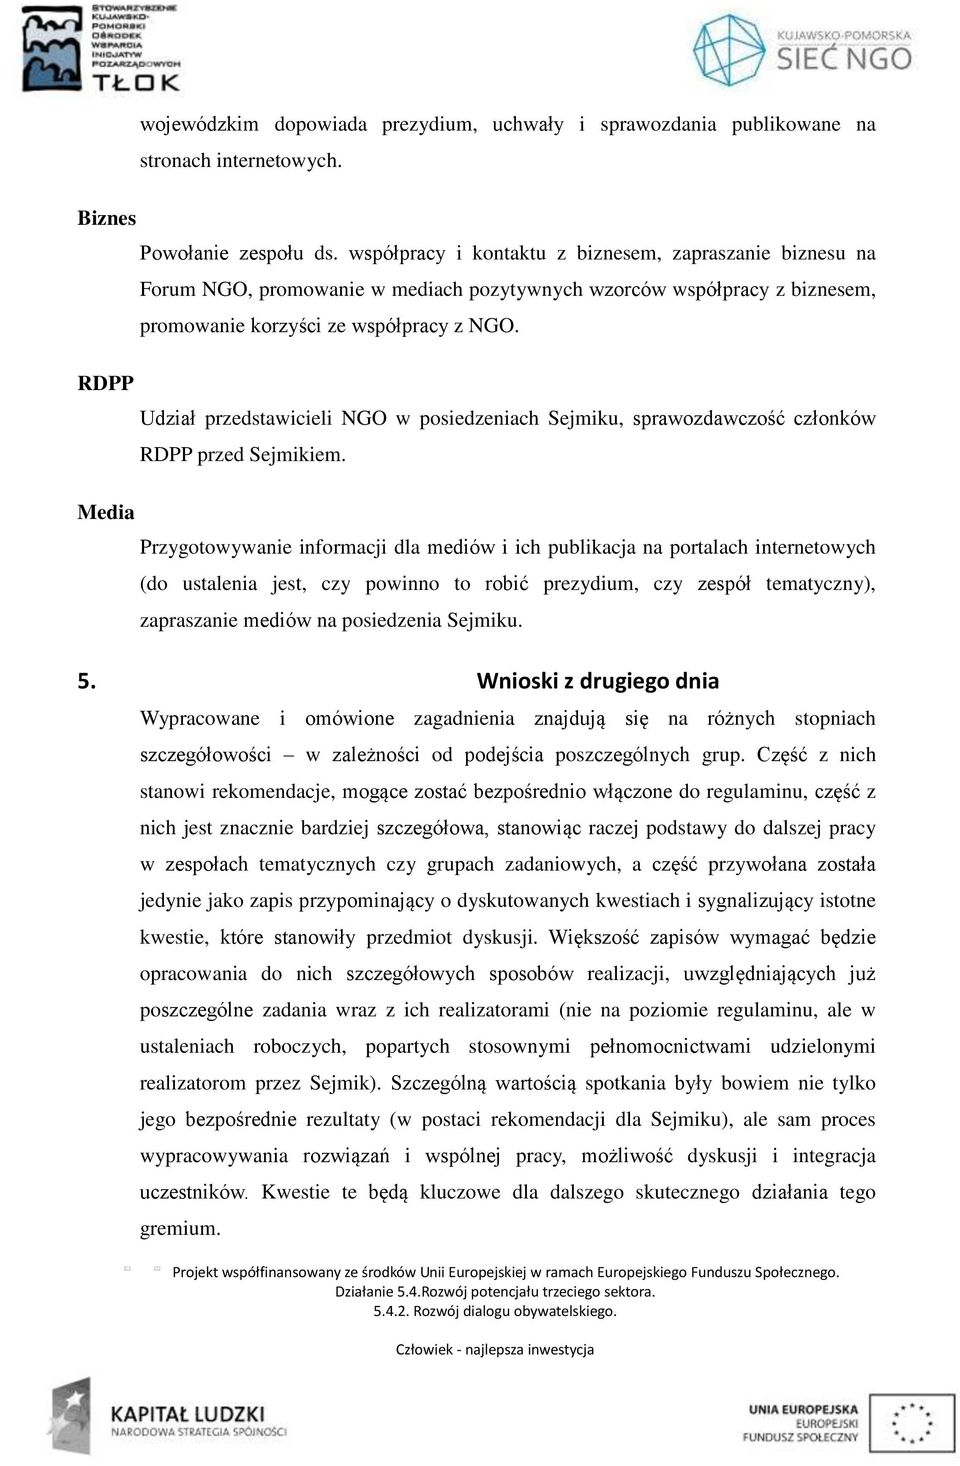 Udział przedstawicieli NGO w posiedzeniach Sejmiku, sprawozdawczość członków RDPP przed Sejmikiem.